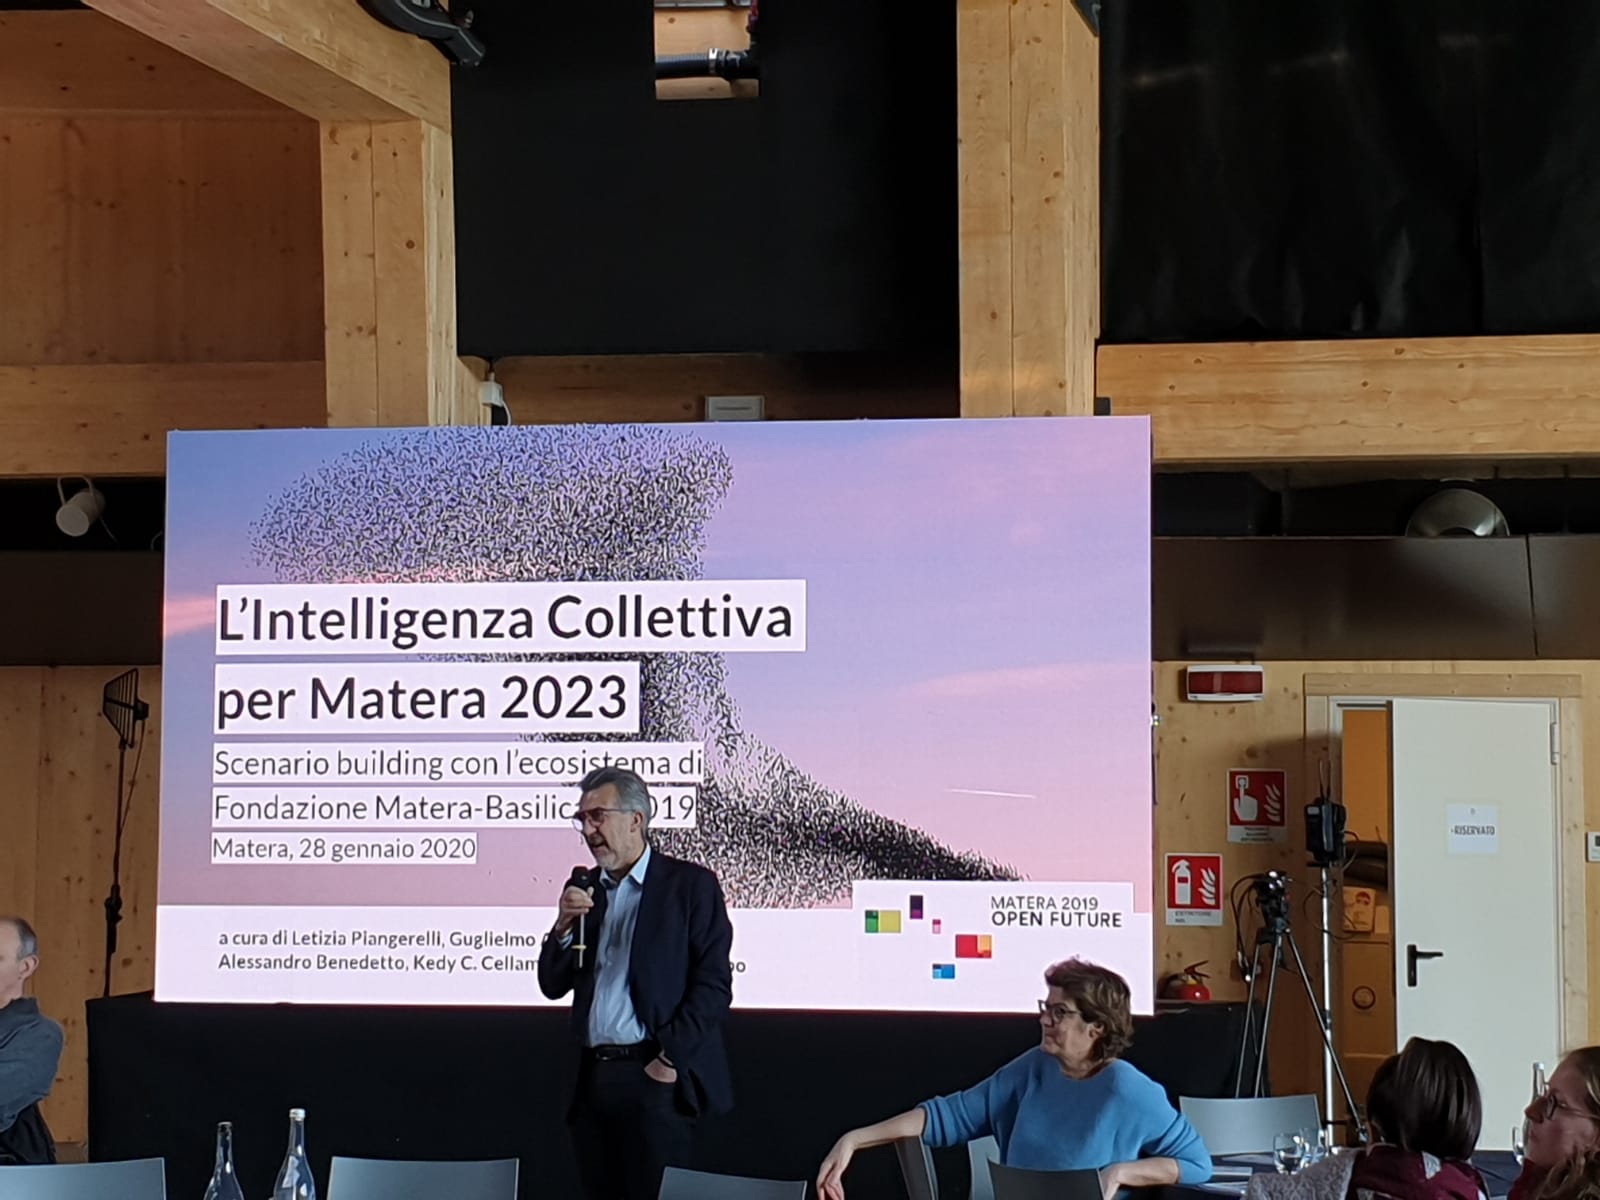 Matera 2019, una giornata per immaginare gli scenari del futuro